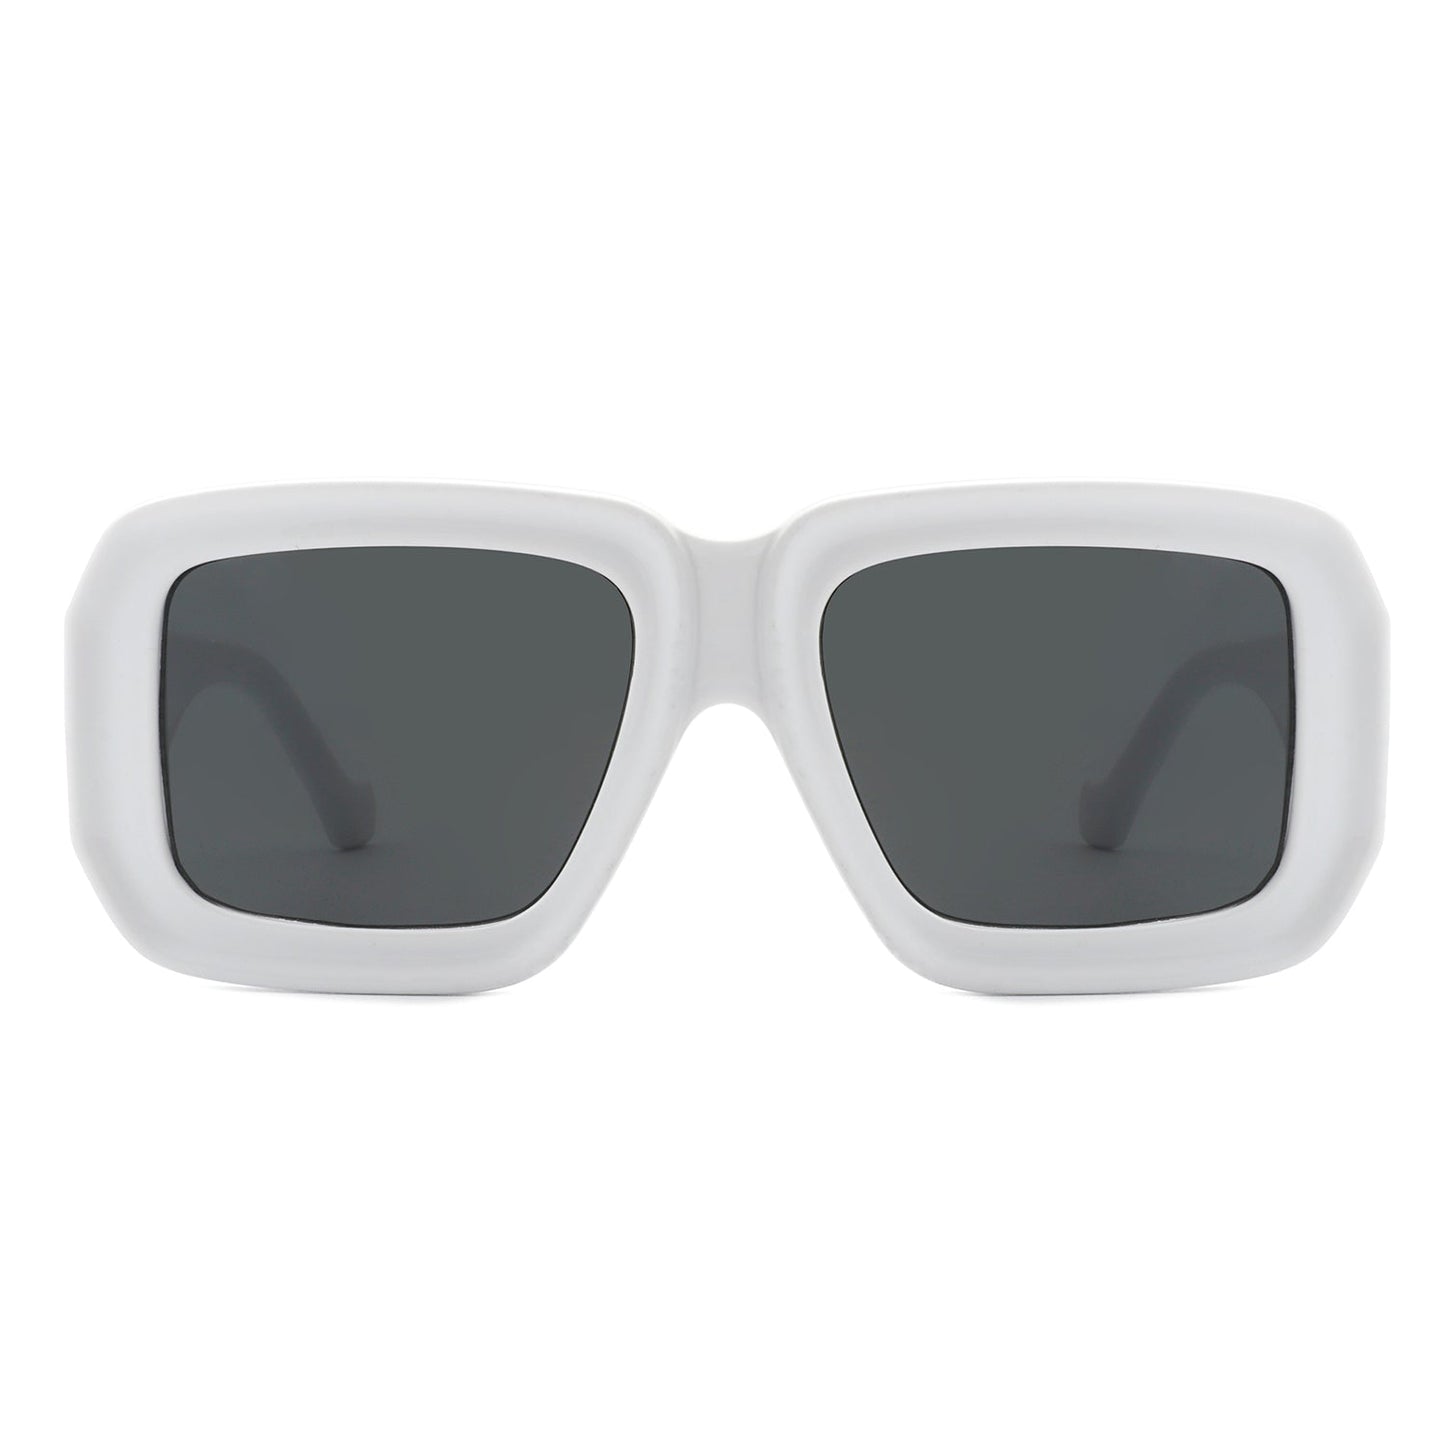 Retro square sunglasses- colors